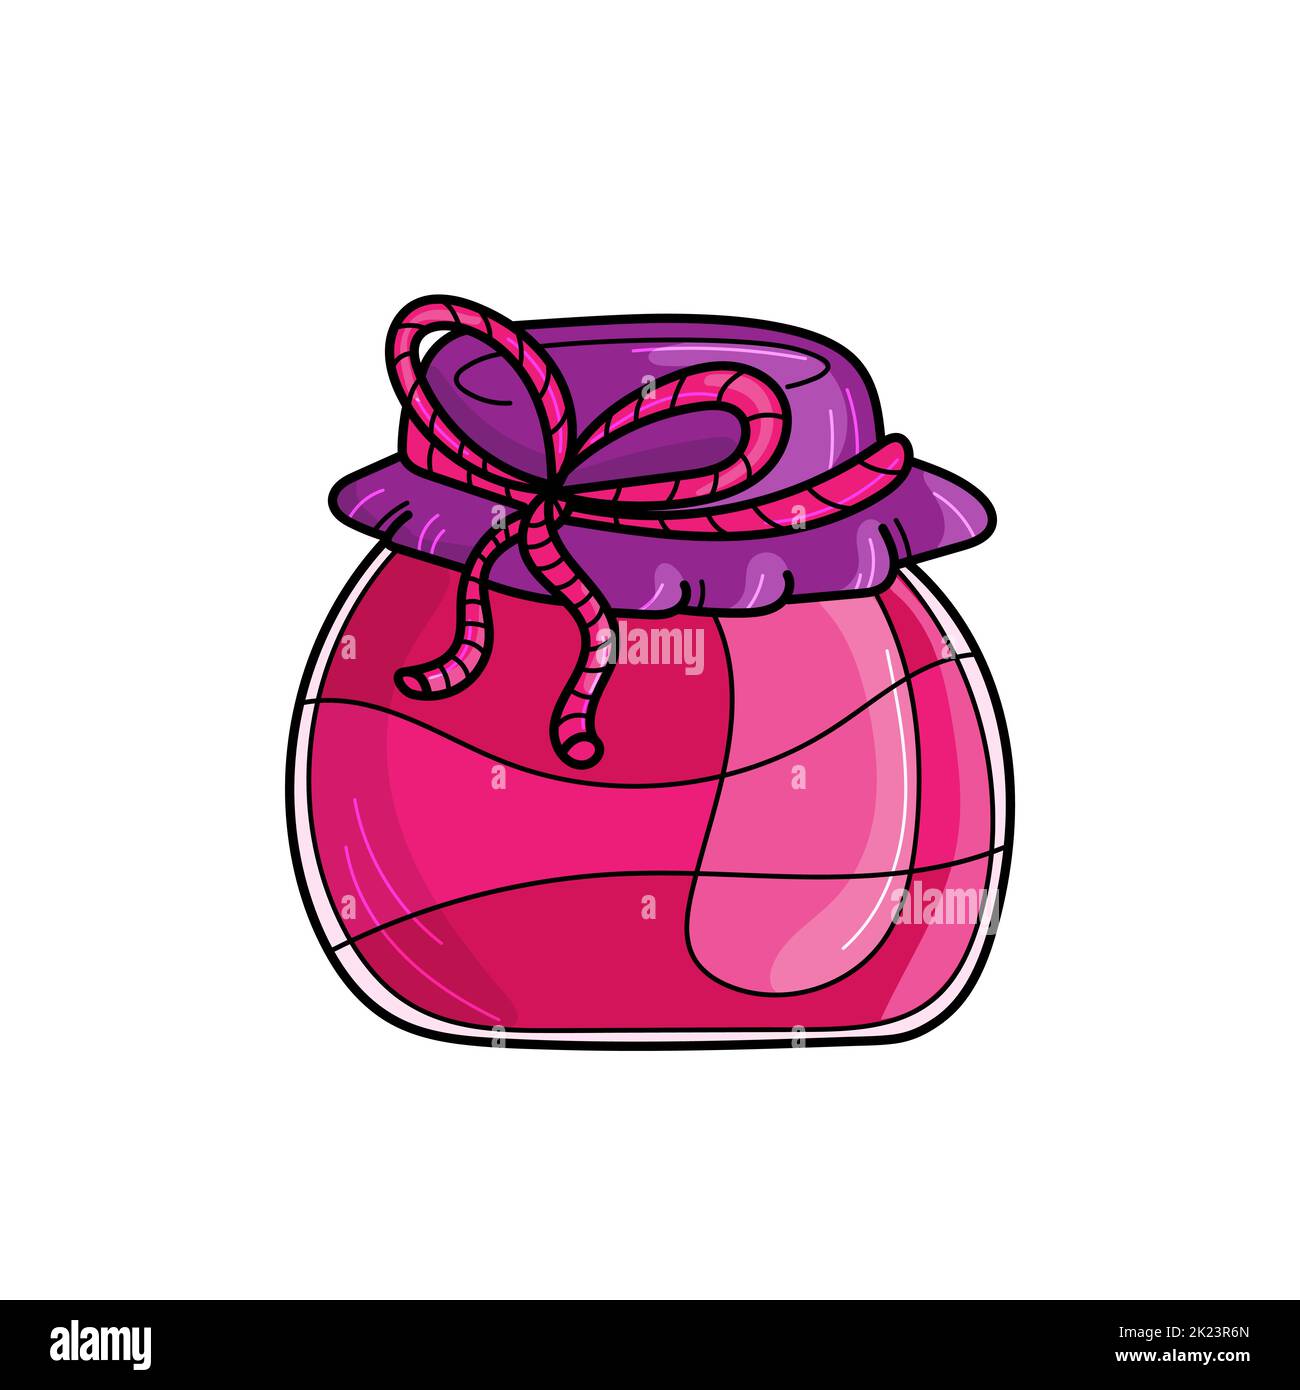 Joli pot de confiture de fraises isolé sur fond blanc. Illustration vectorielle dessinée à la main en style crachoir. Couleurs roses Illustration de Vecteur